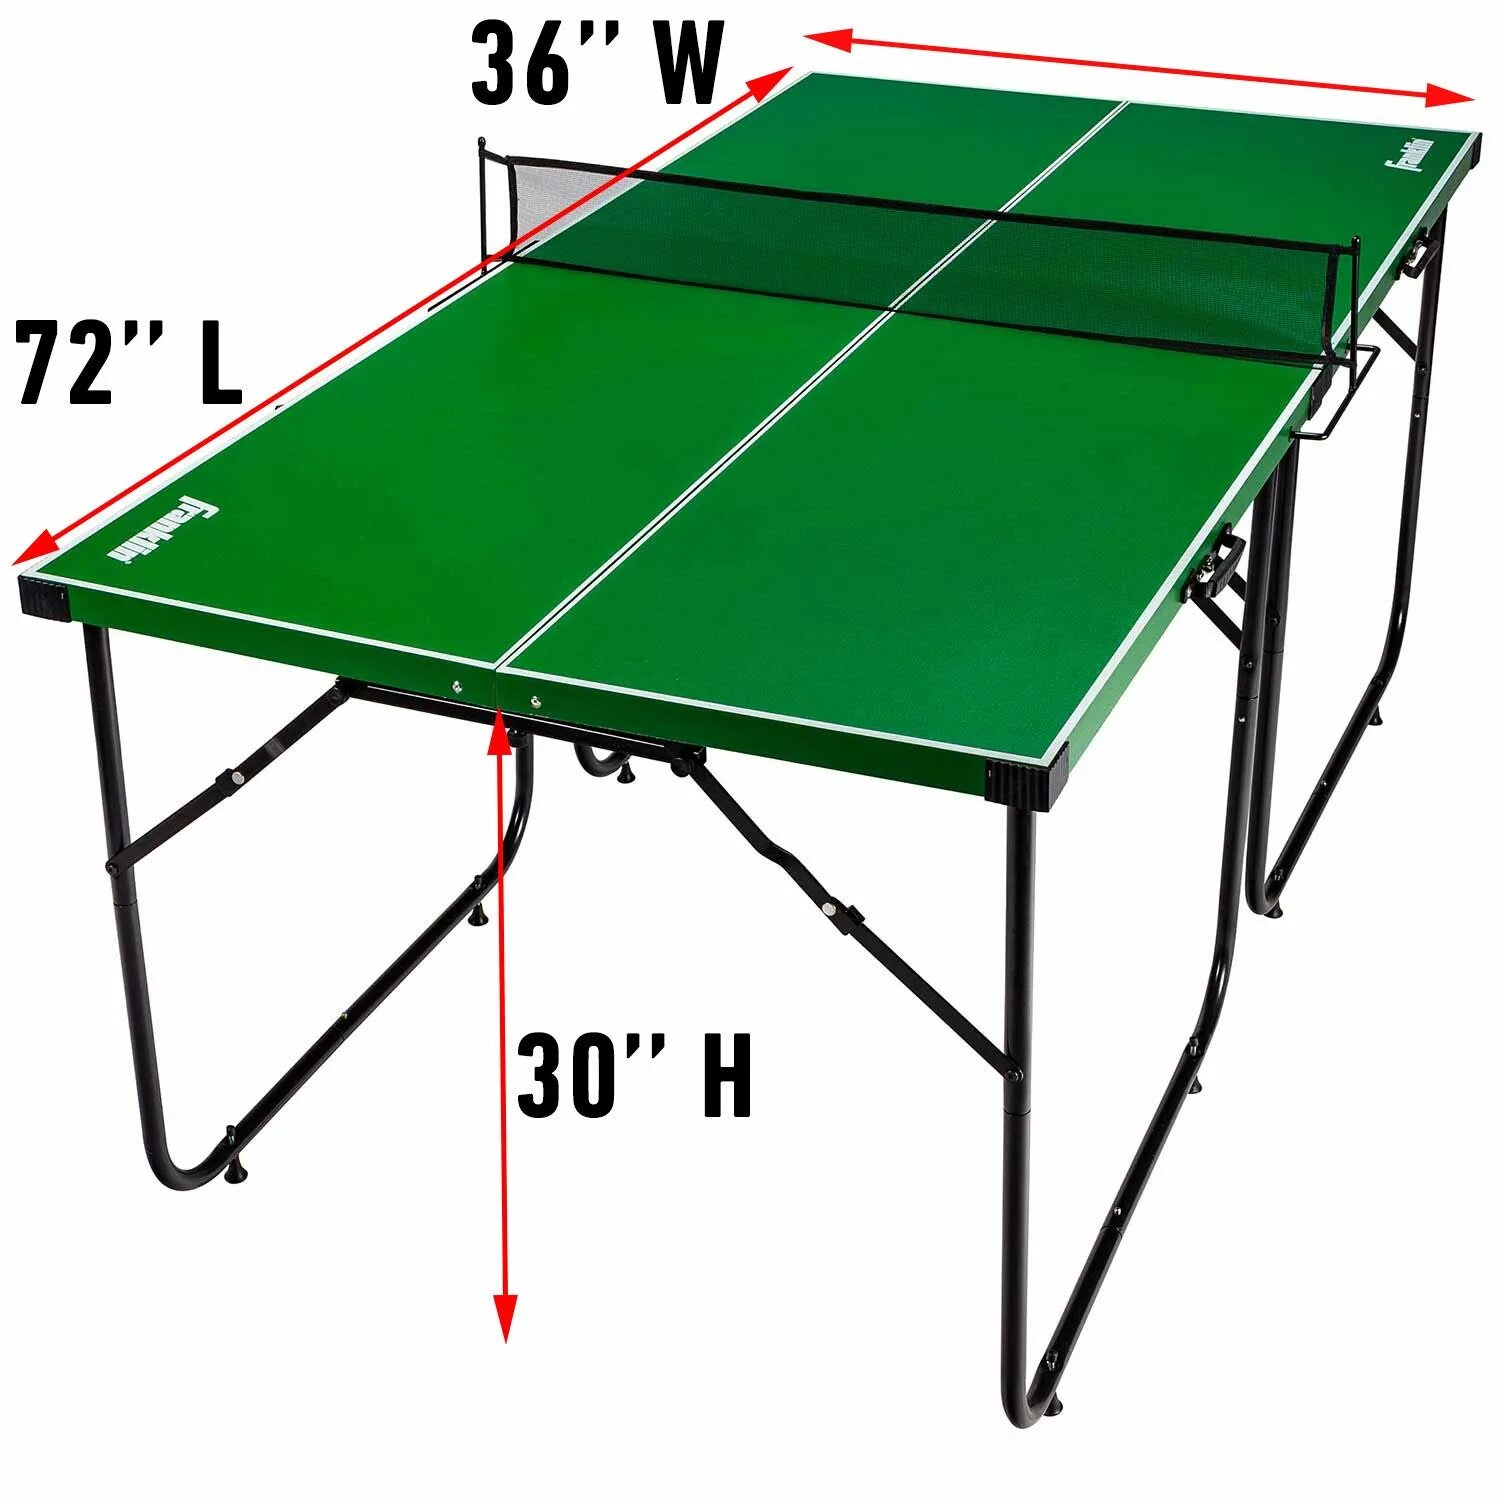 Теннисный мини-стол Олимпик. Кронштейн теннисный стол start line. Стол Баттерфляй для настольного тенниса. Stol Tennis” “Ping-Pong”.